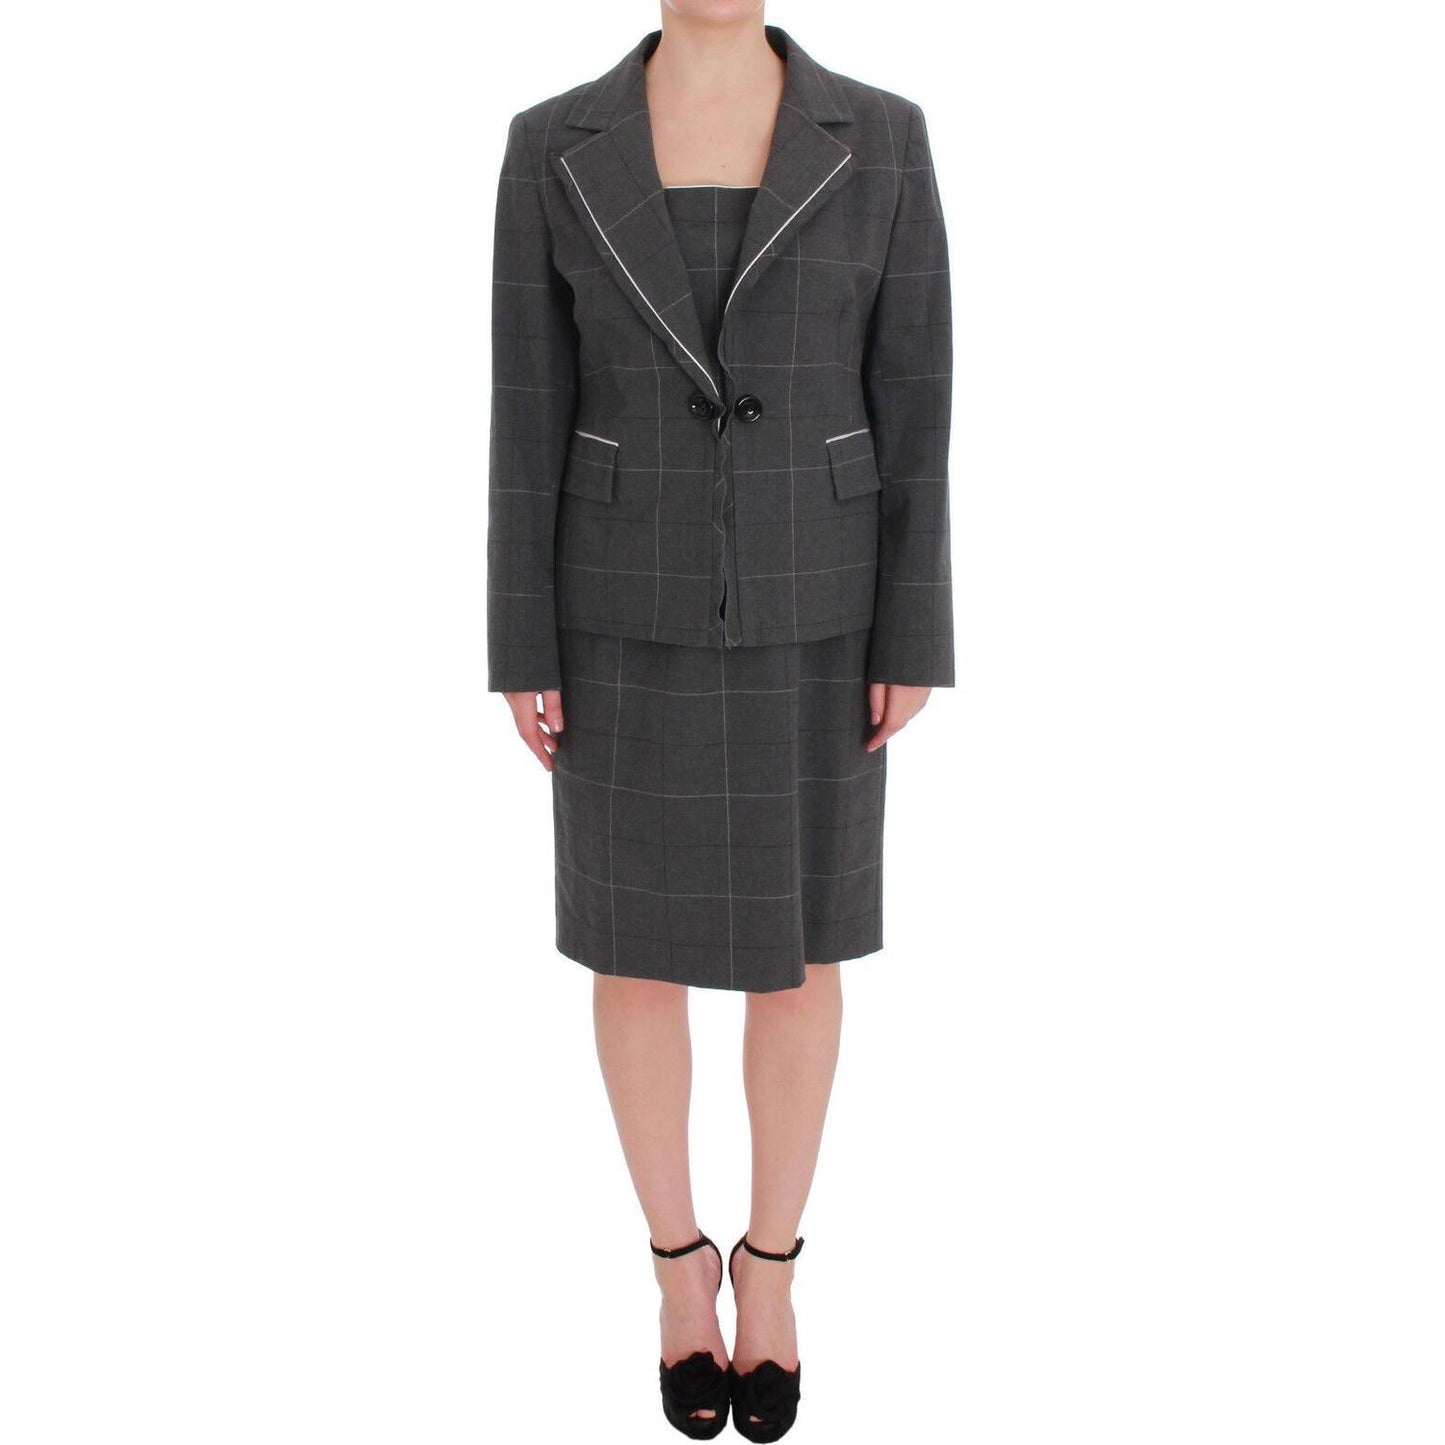 BENCIVENGA Elegant Checkered Cotton-Blend Suit Set Skirt Suit gray-checkered-cotton-blazer-dress-set-suit